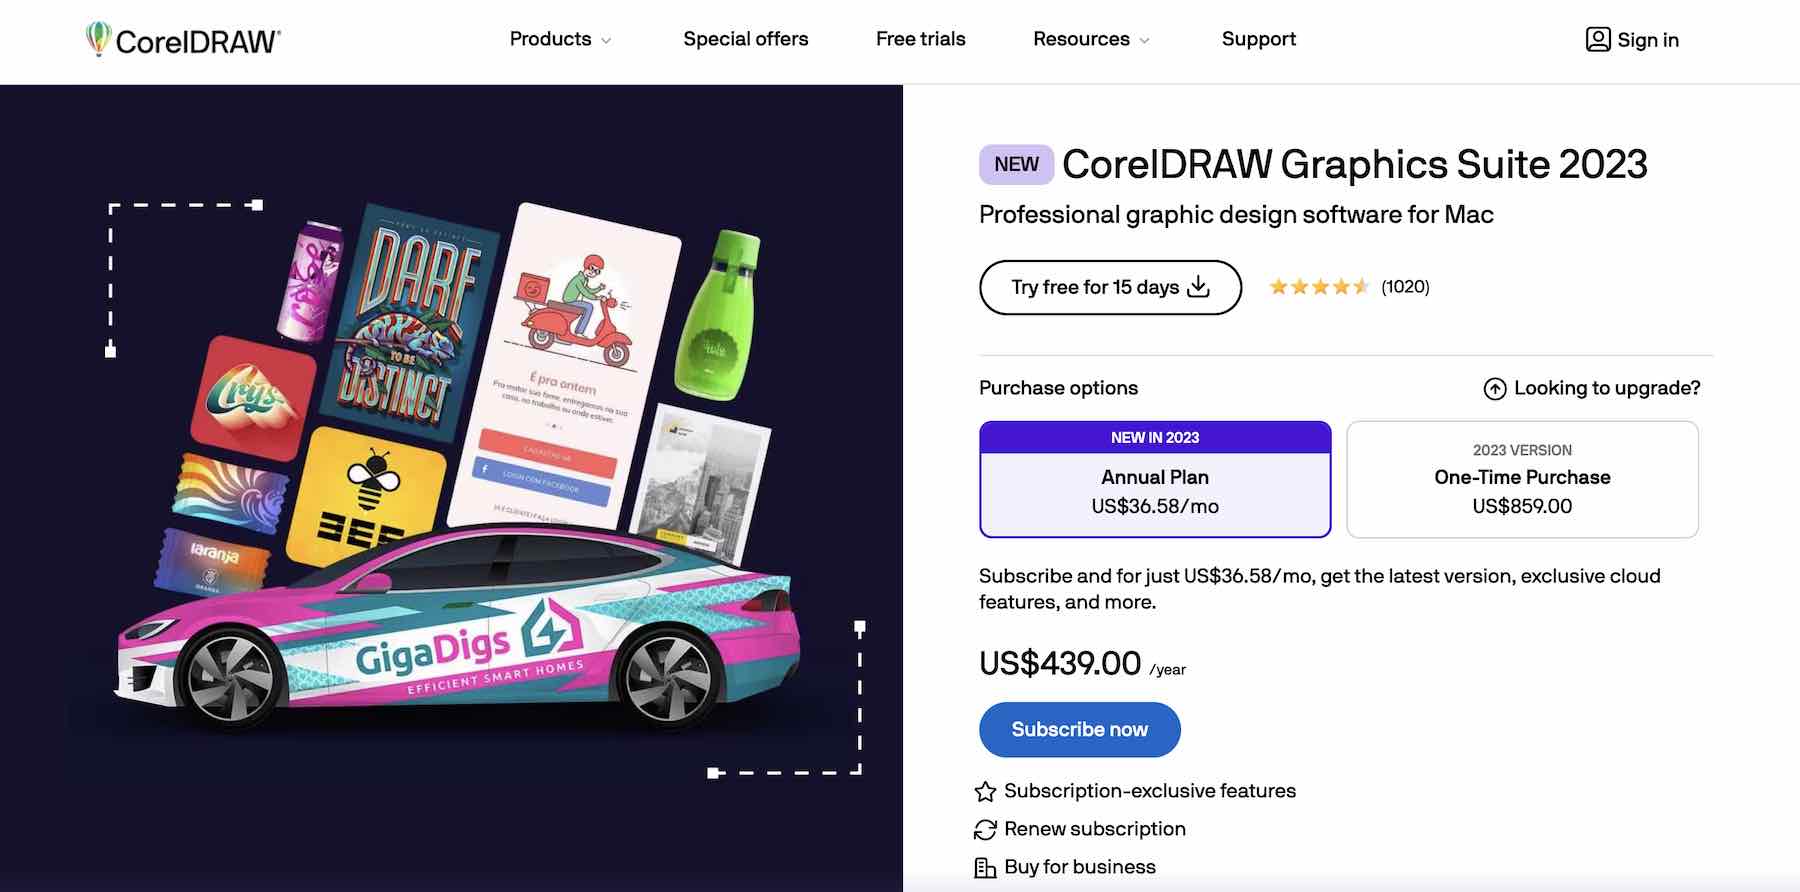 Captura de pantalla del sitio web de CorelDRAW que muestra los planes de precios